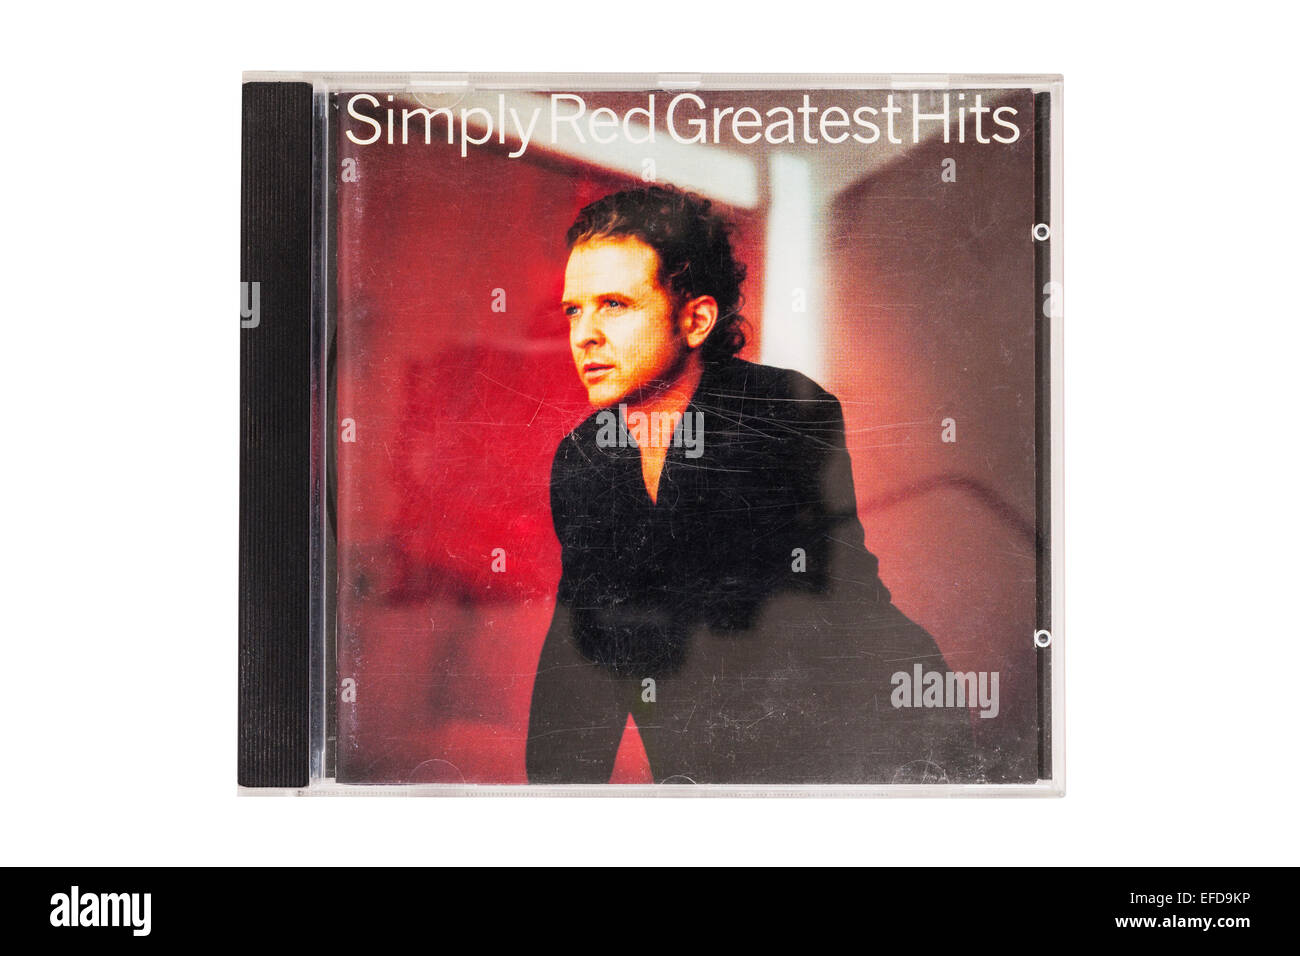 Die einfach Red Greatest Hits Musik-CD auf einem weißen Hintergrund Stockfoto